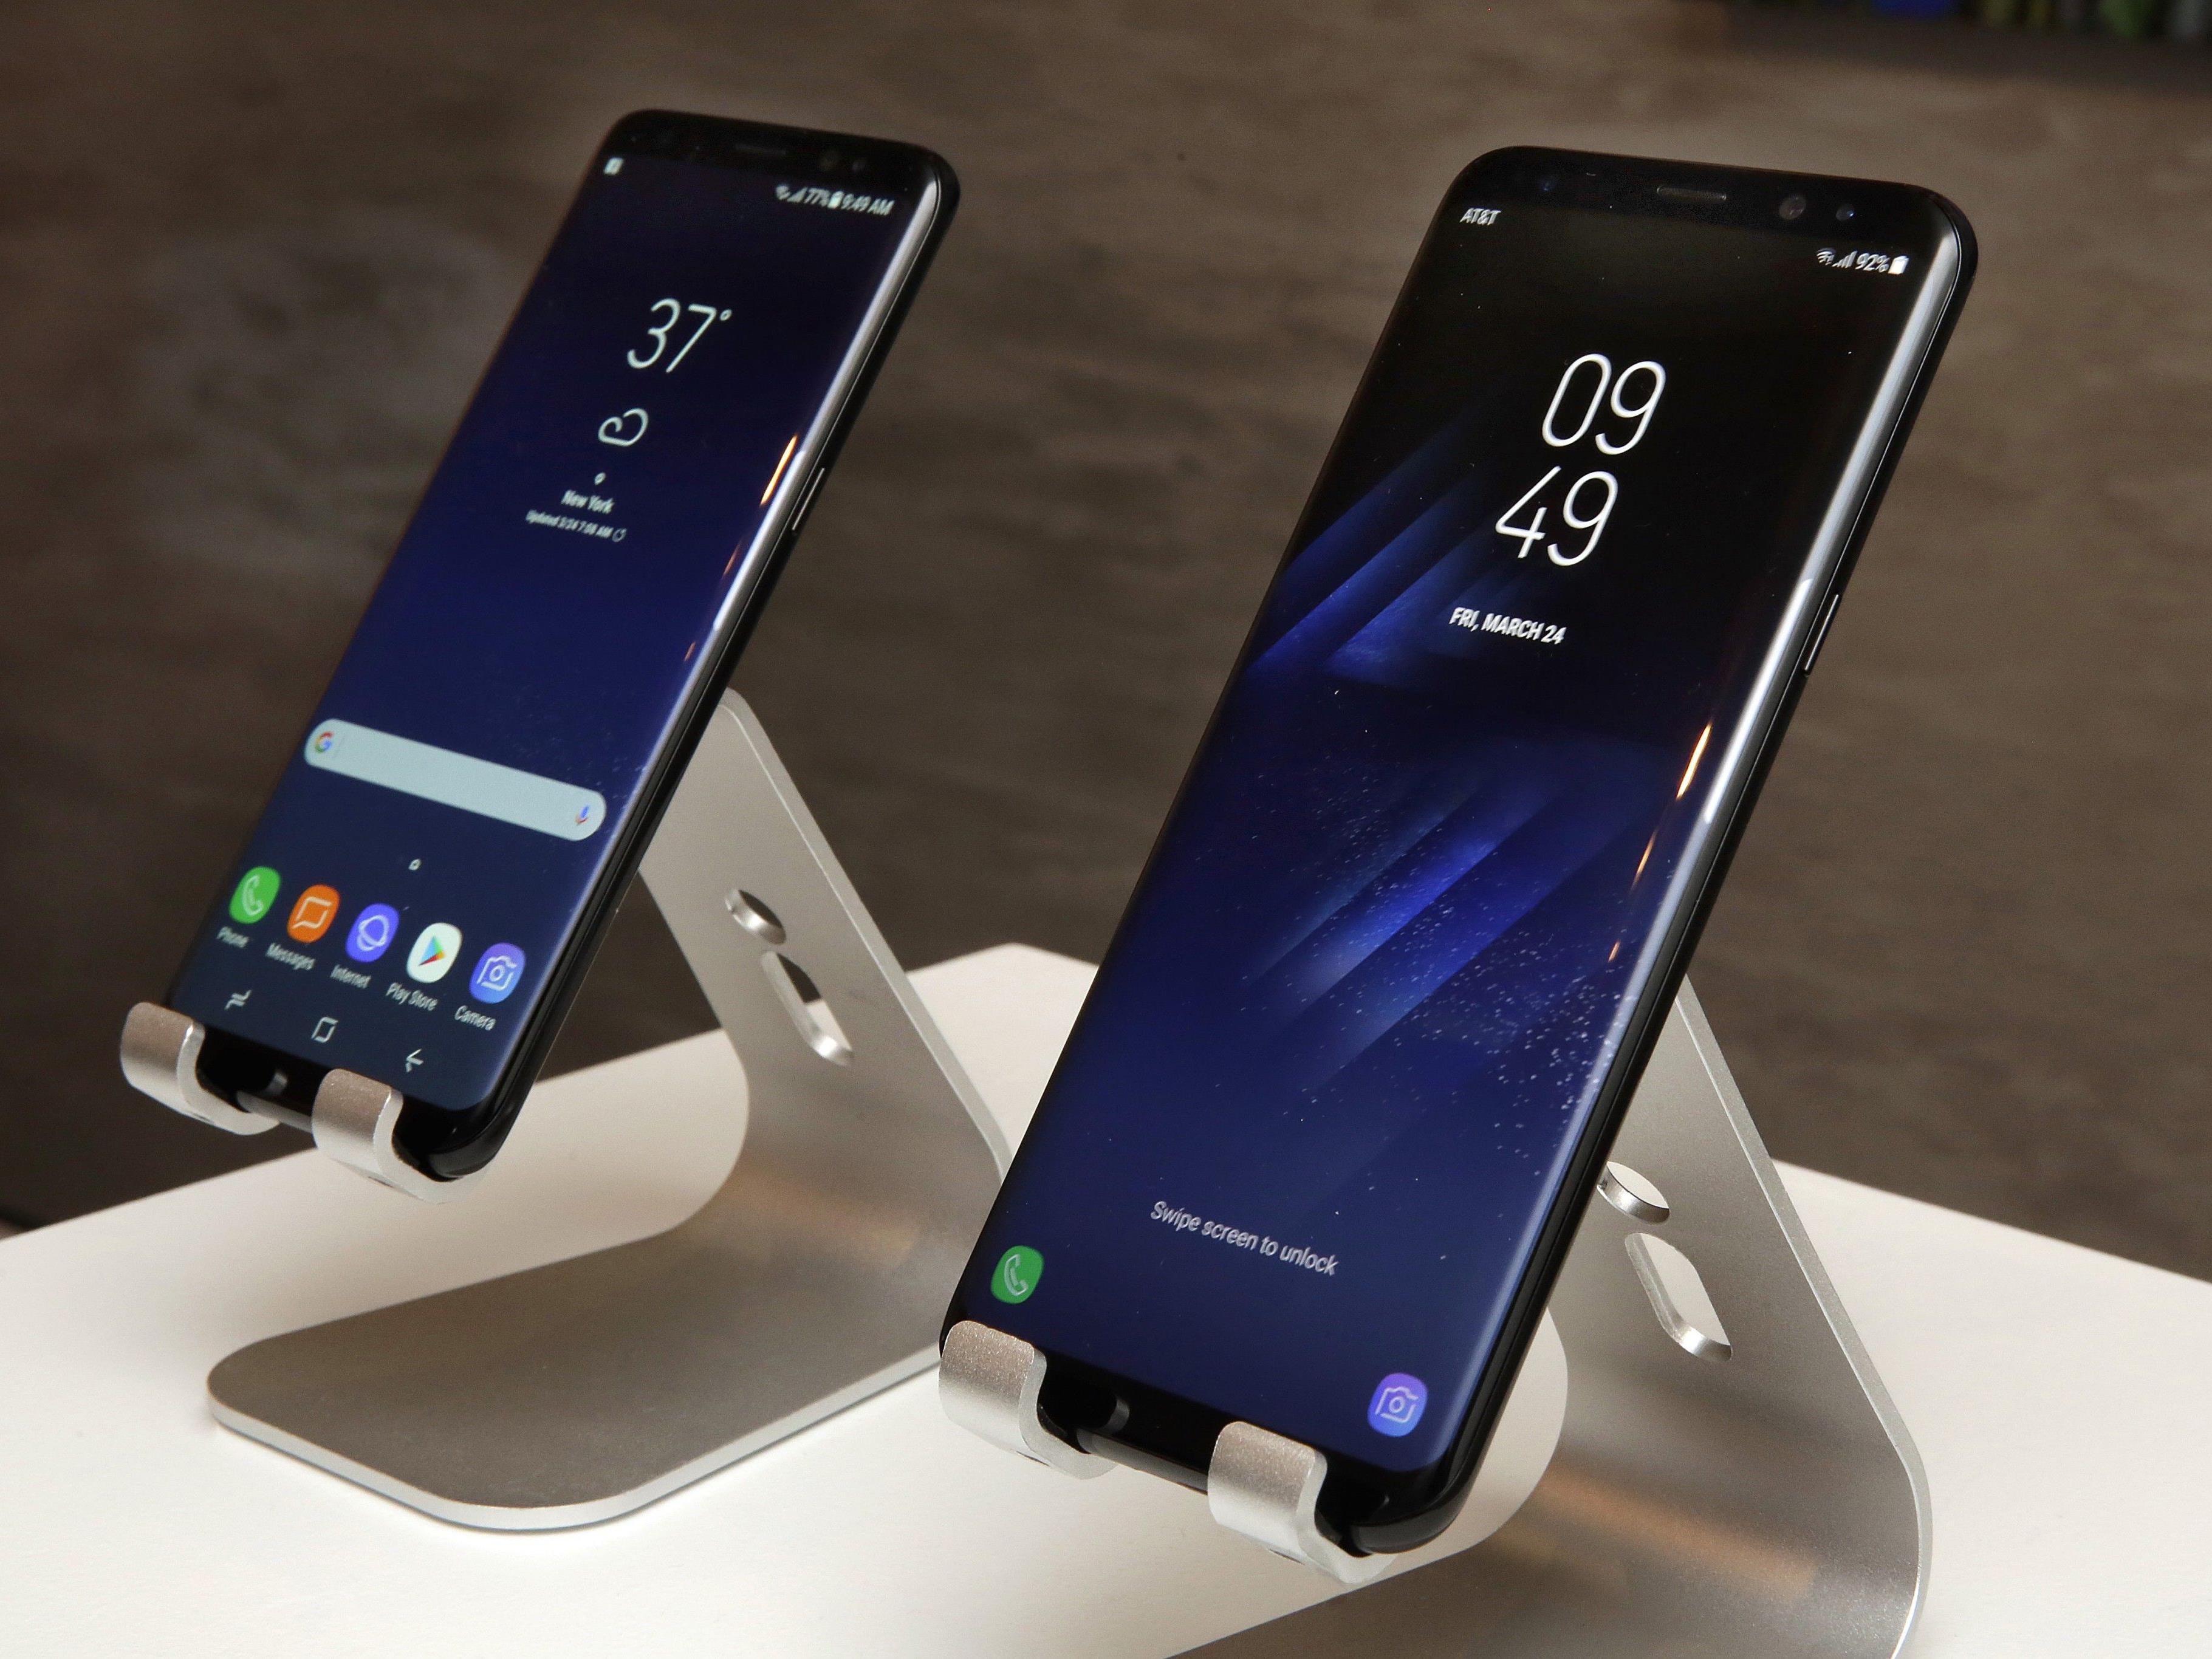 Das neue Samsung Galaxy S8 wurde vorgestellt.